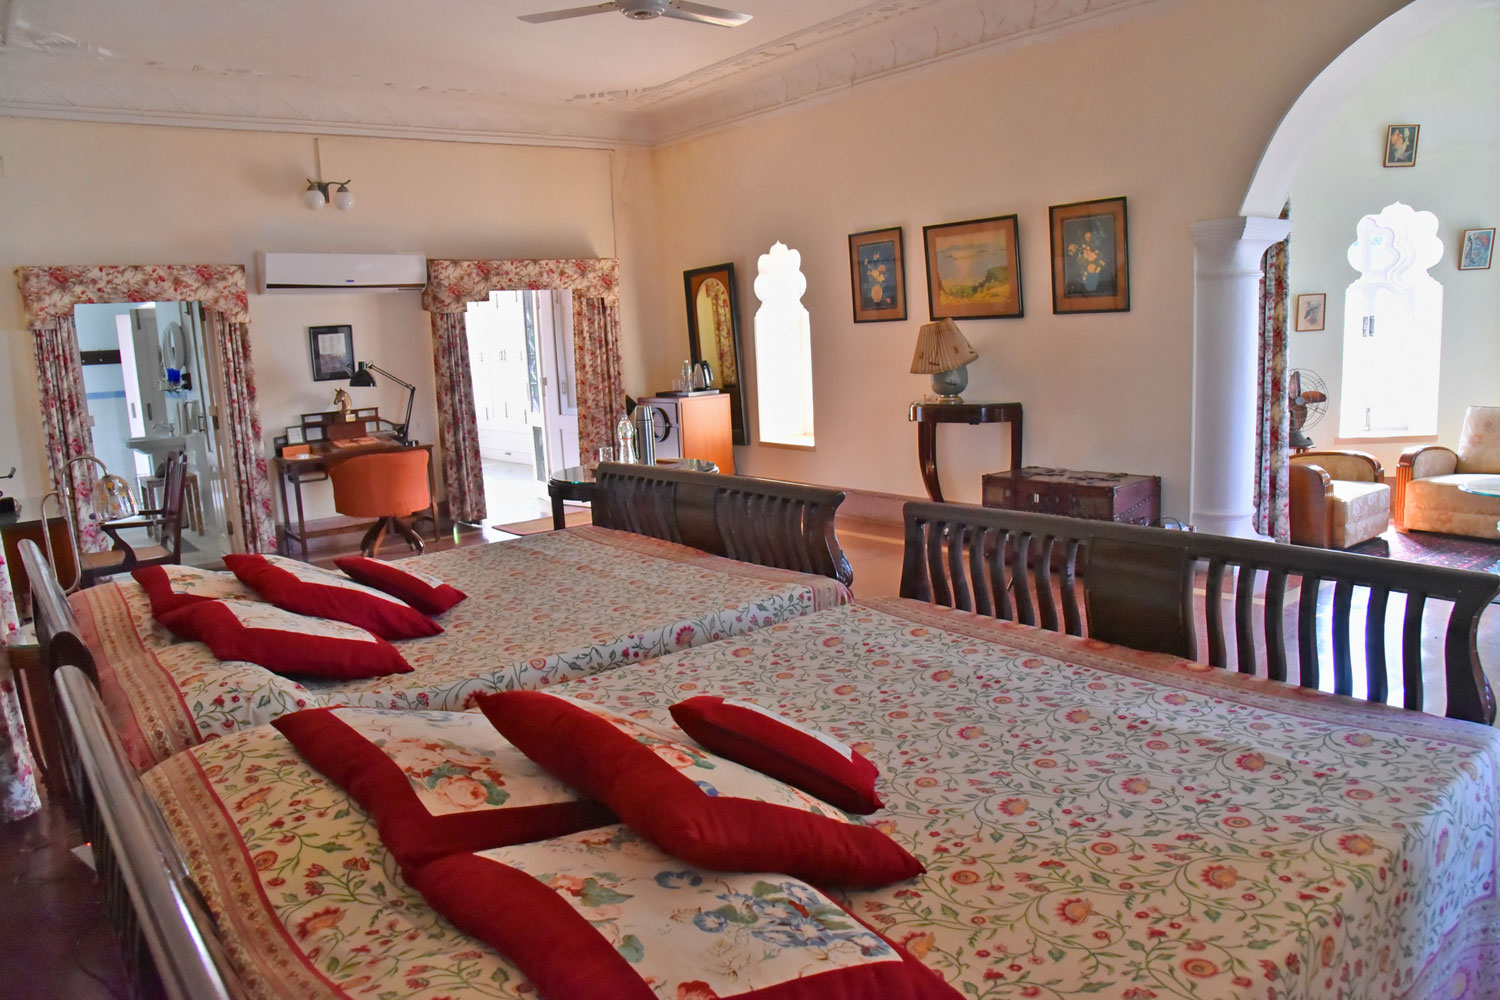 Udai Bilas Palace, Rajasthan